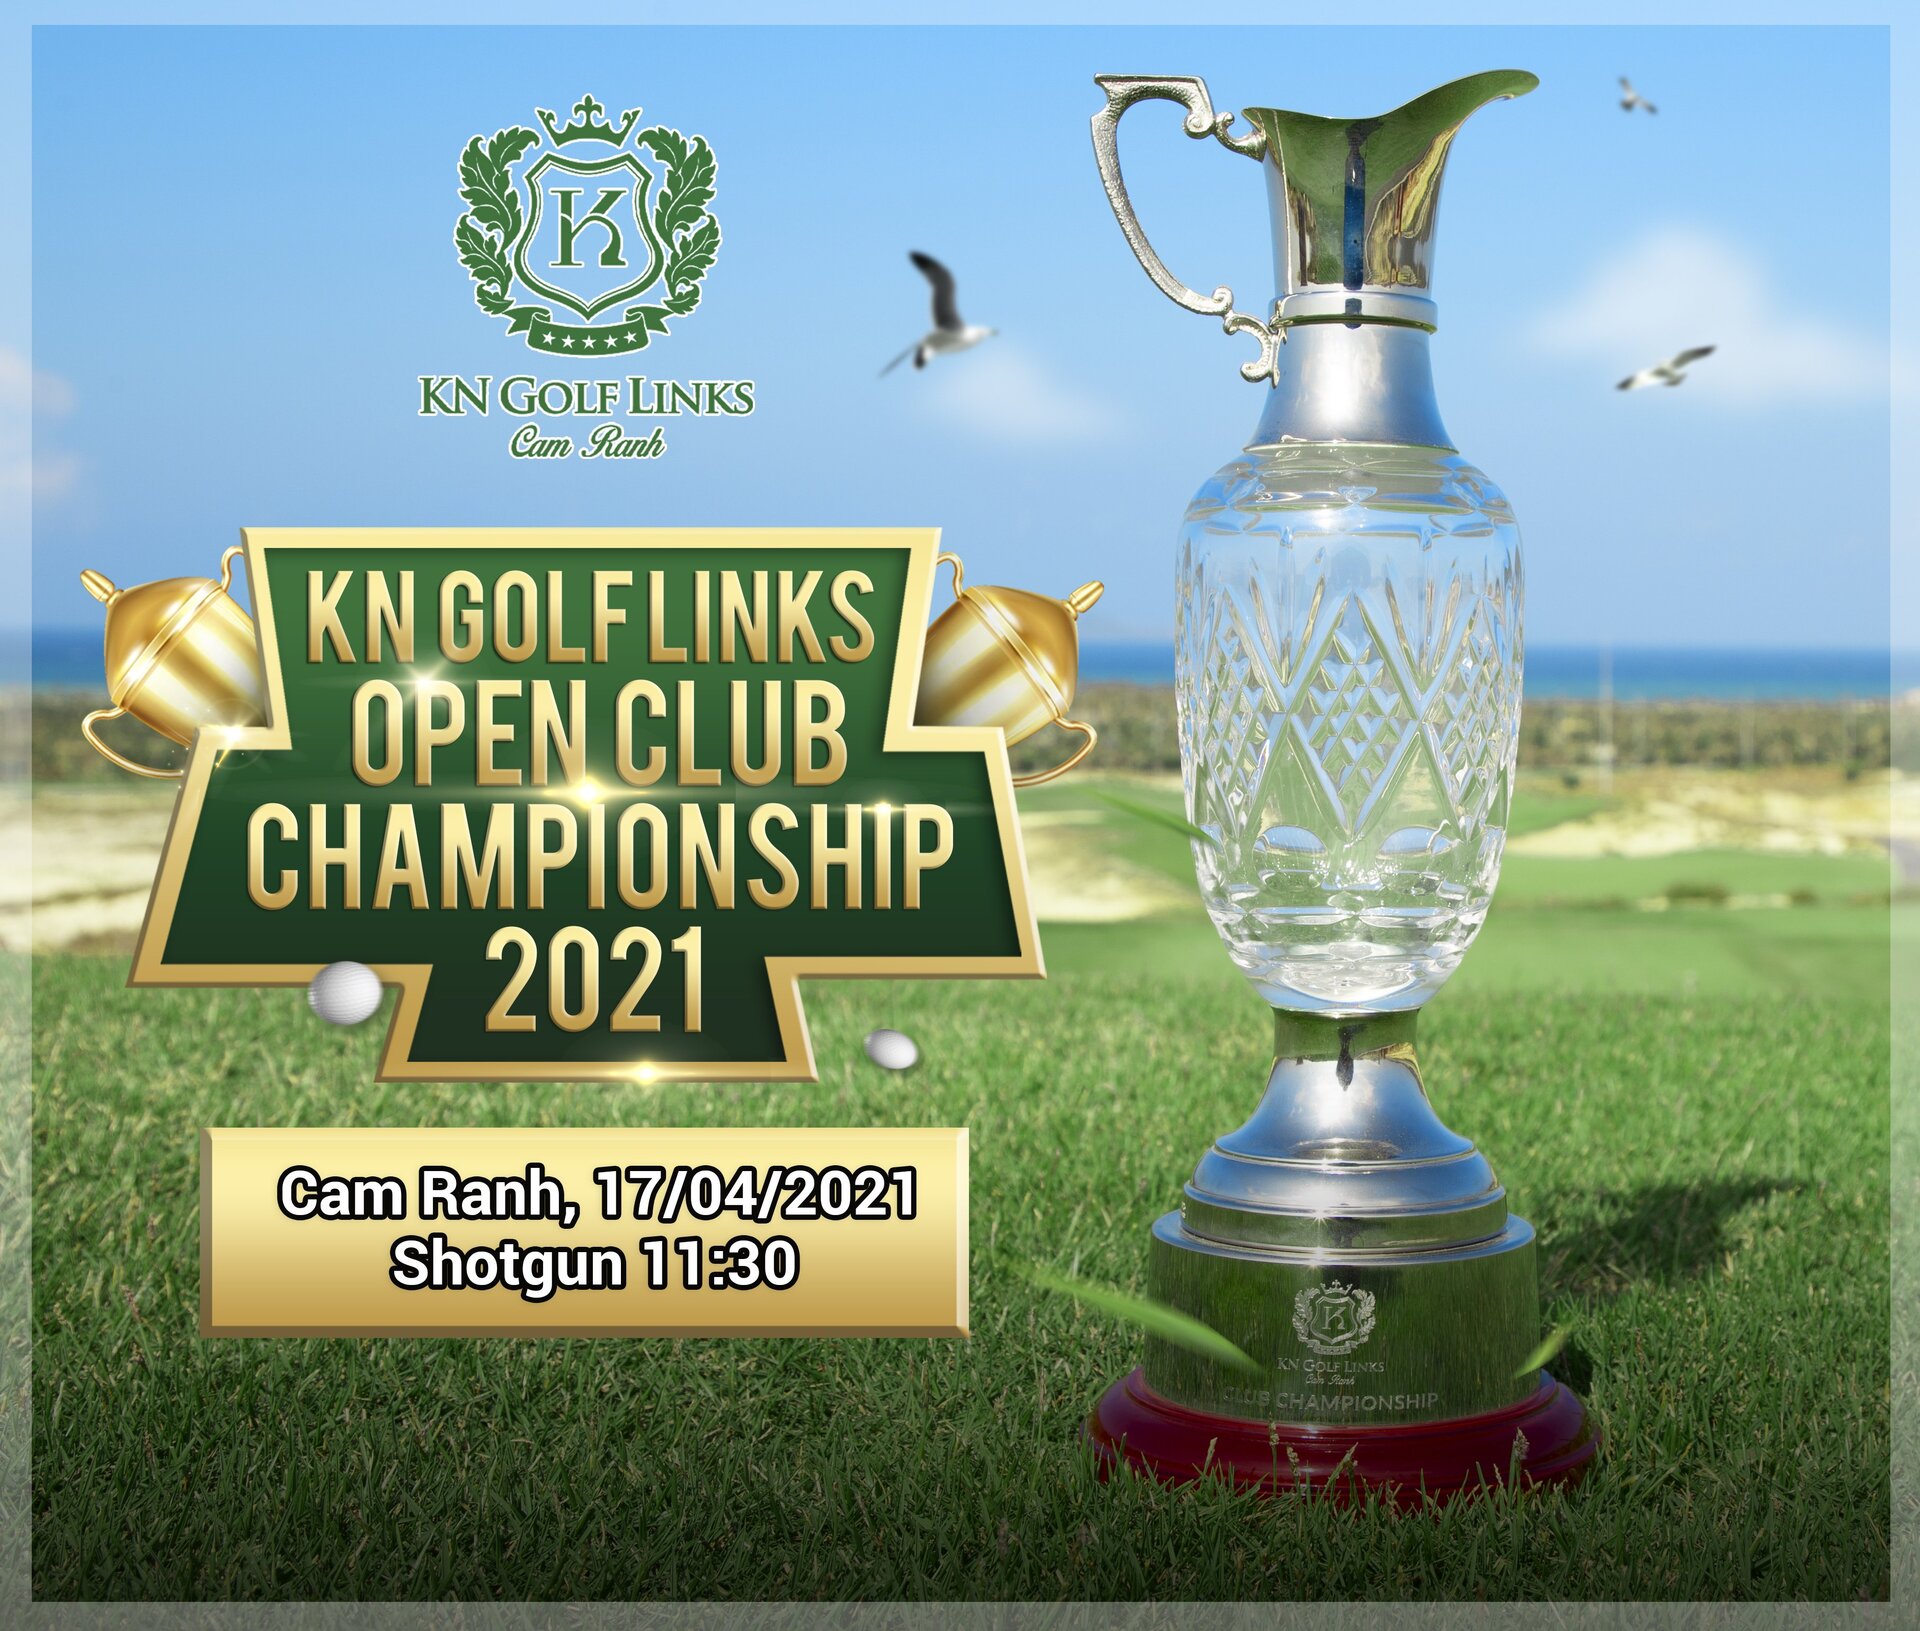 Giải Vô địch Câu Lạc Bộ KN Golf Links Mở rộng 2021 sẽ chính thức diễn ra vào ngày 17/04/2021